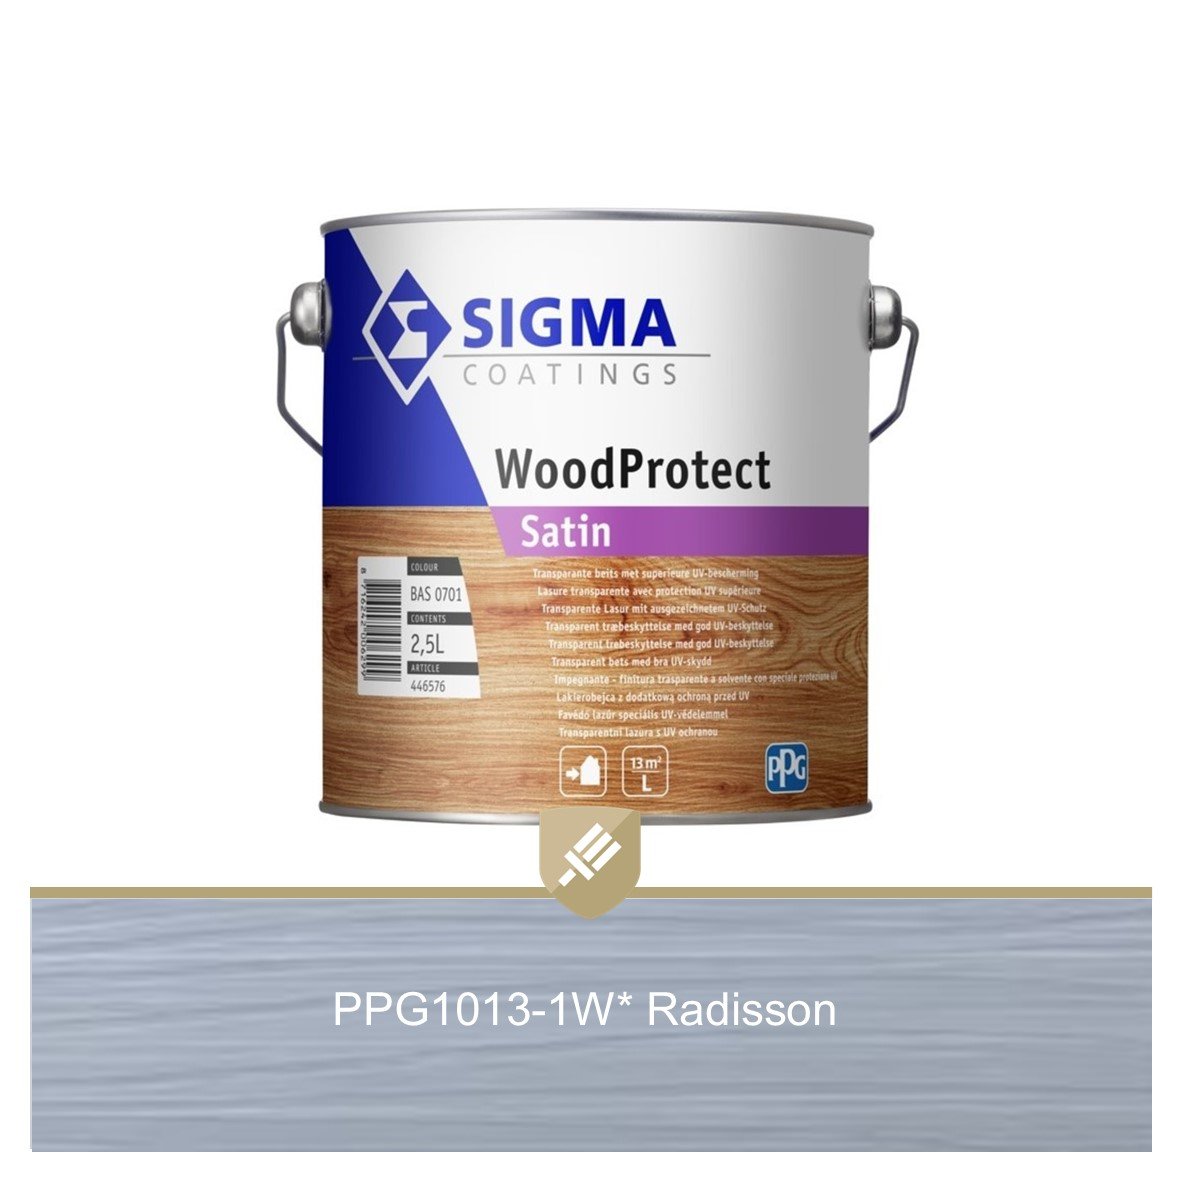 Meerdere aanpassen mannetje Sigma WoodProtect Satin PPG1013-1W* Radisson 2.5L kopen - Verf & Behang  Specialist